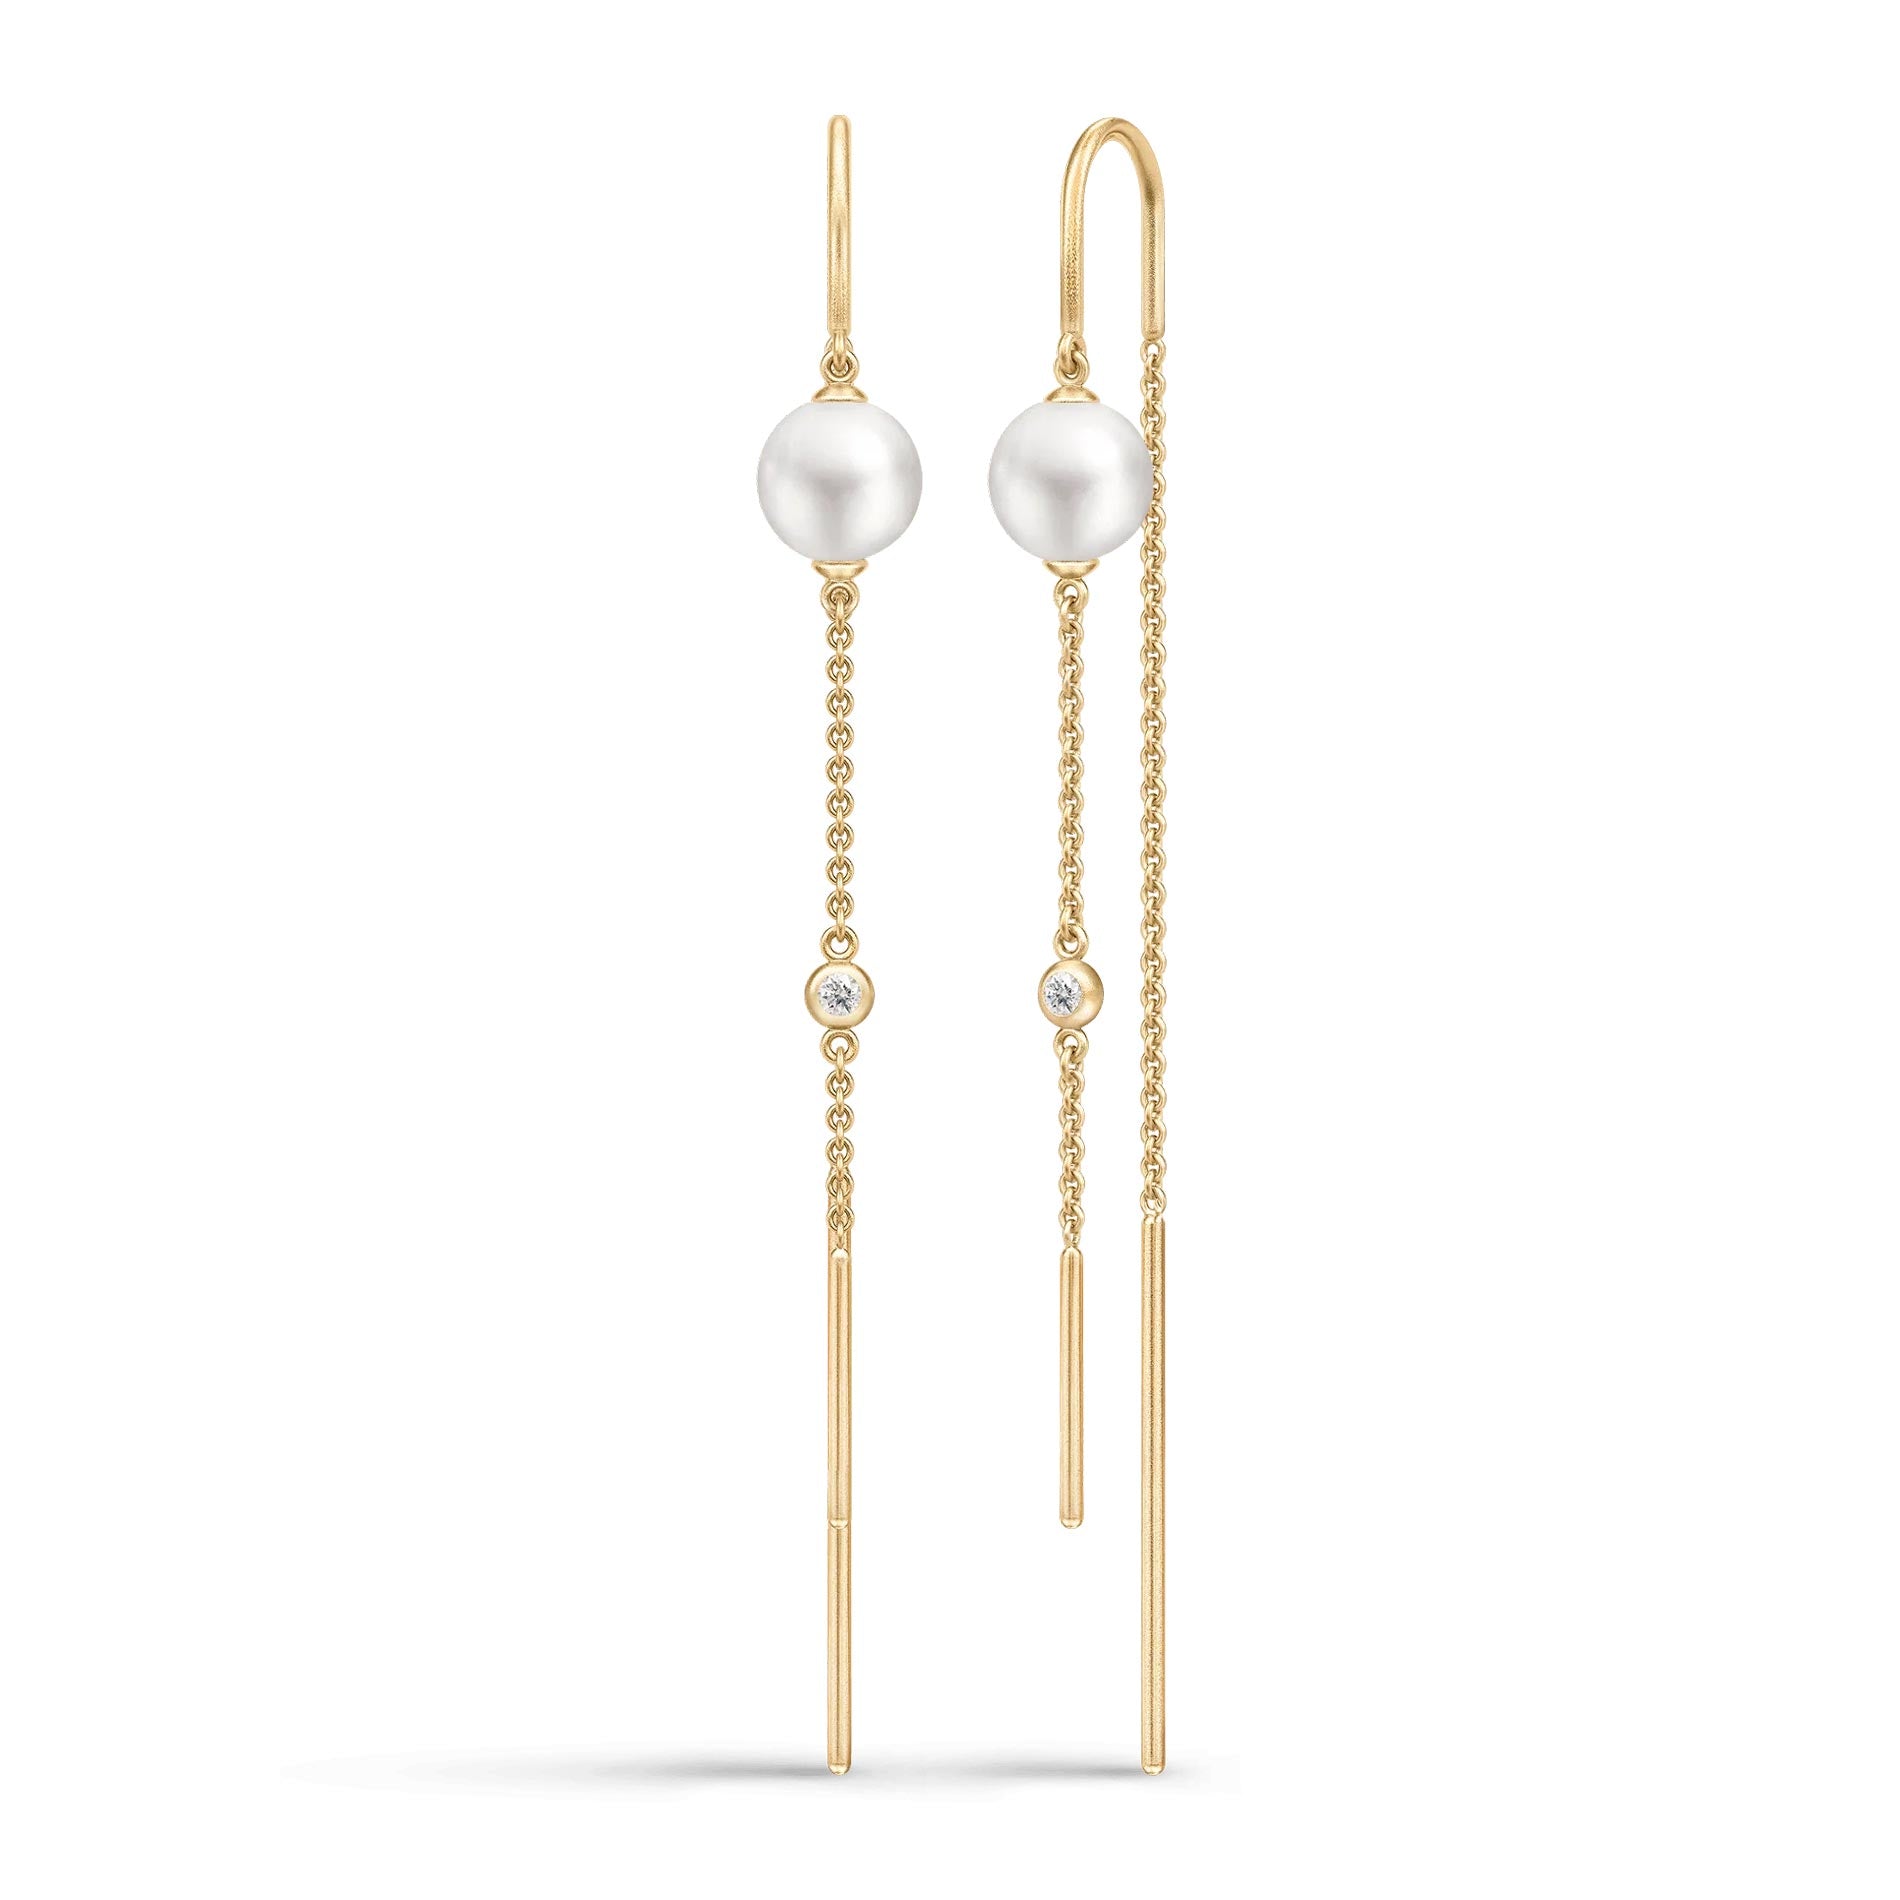 Forgyldte øreringe med hvide perler og klare zirkonia fra Julie Sandlau